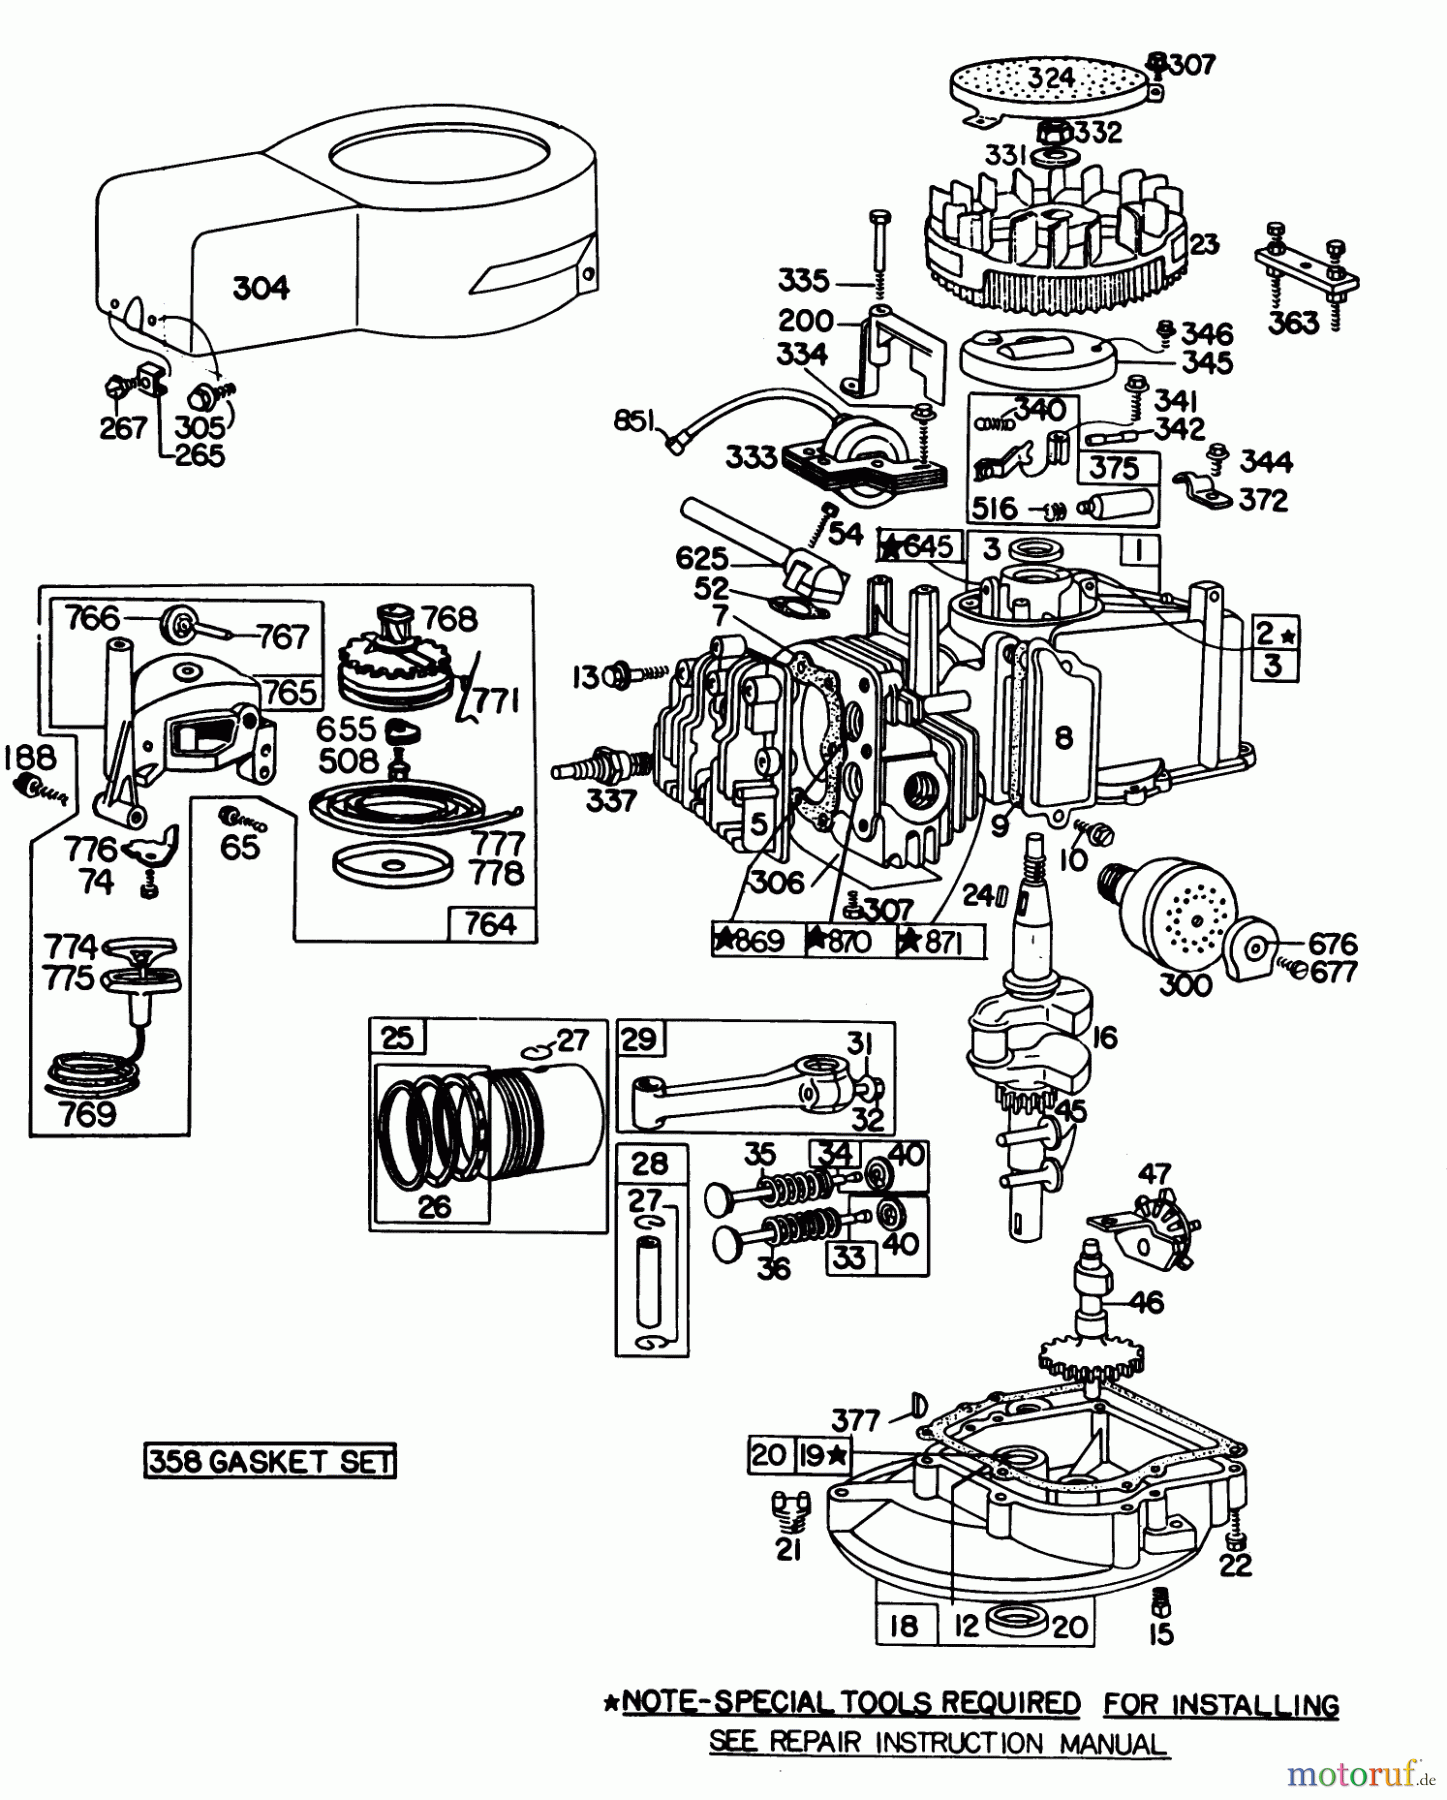  Toro Neu Mowers, Walk-Behind Seite 1 20798 - Toro Lawnmower, 1980 (0000001-0999999) ENGINE BRIGGS & STRATTON MODEL NO. 92908-2054-02